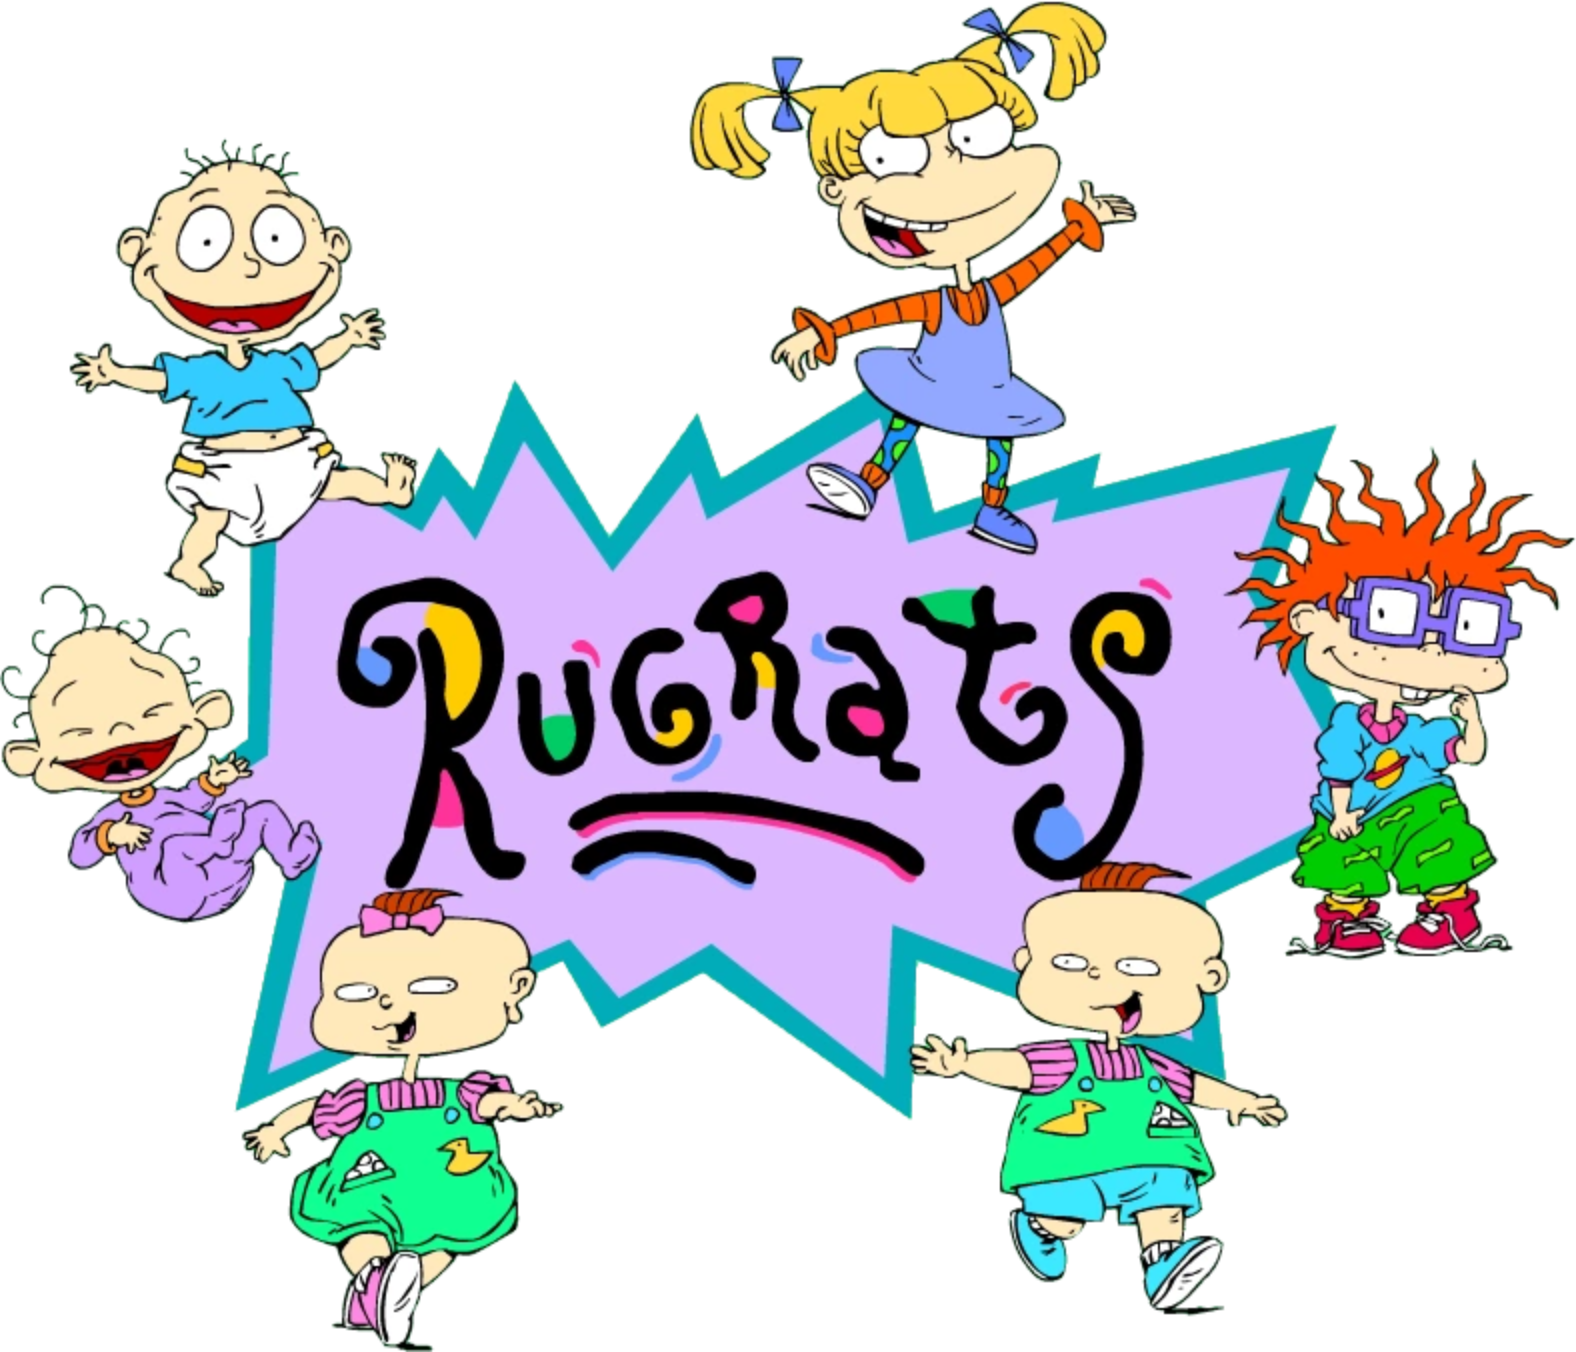 Rugrats Volume 1 (8 DVDs Box Set)